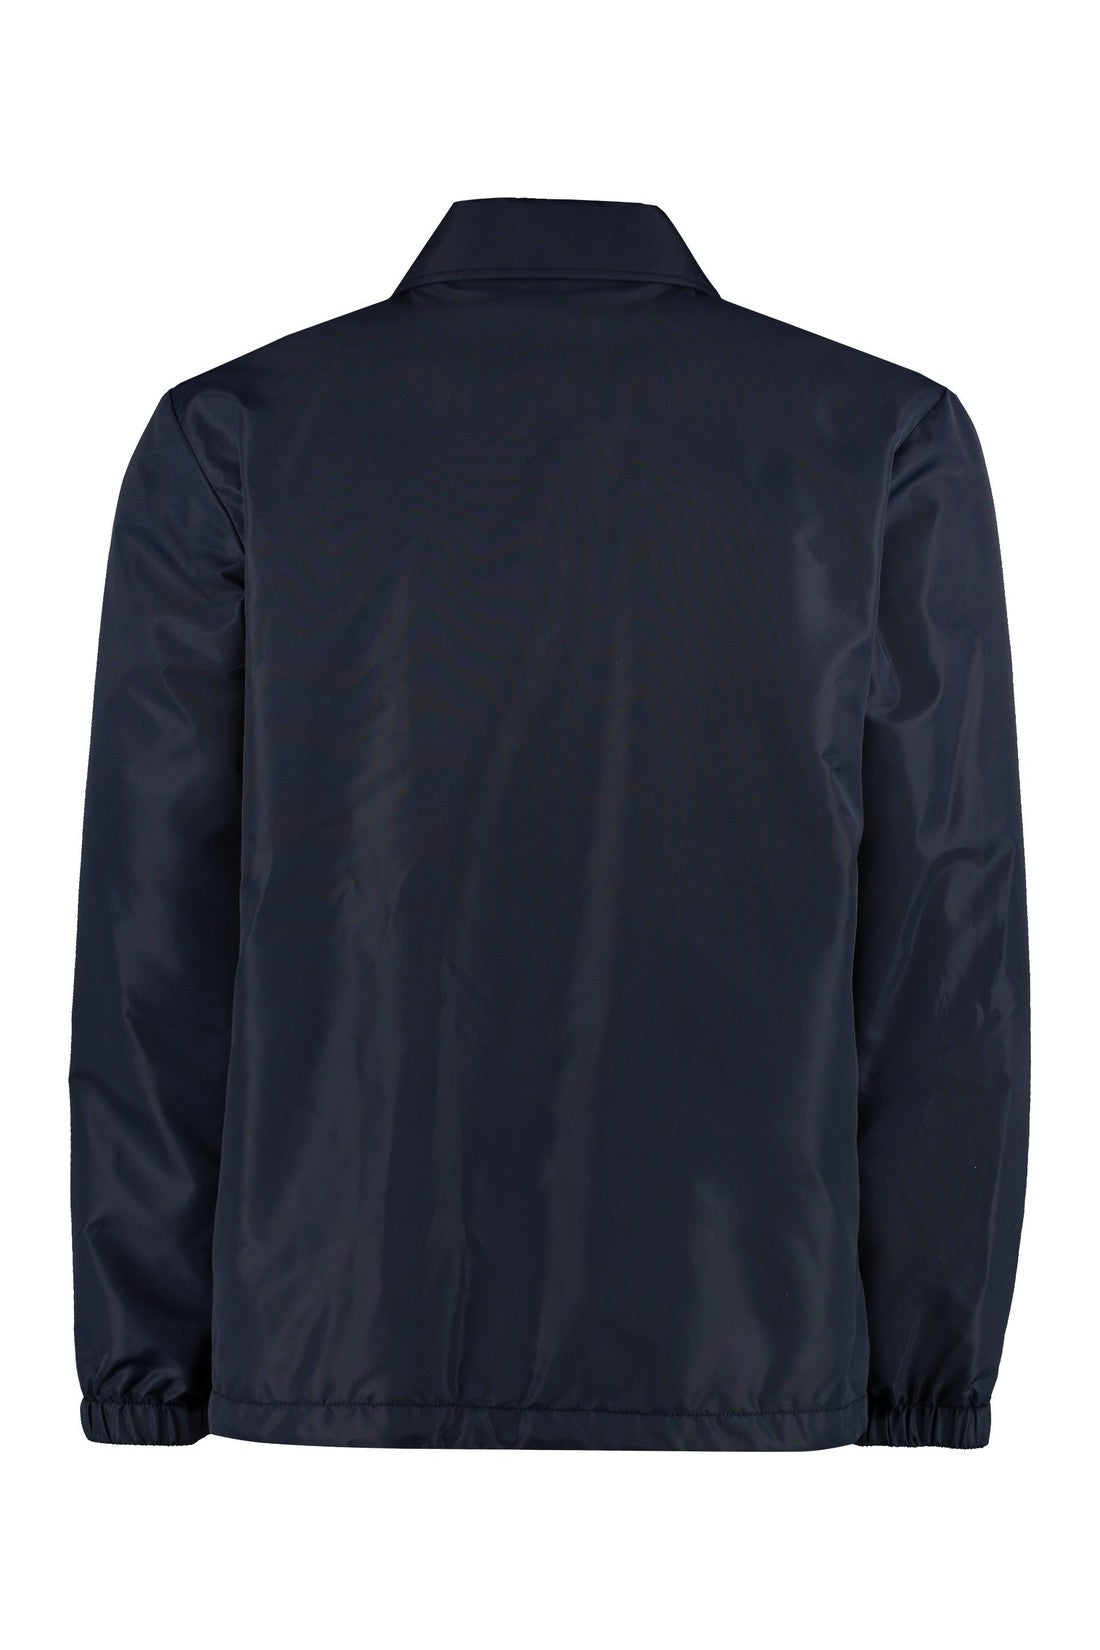 A.P.C.-OUTLET-SALE-Vadim techno fabric jacket-ARCHIVIST